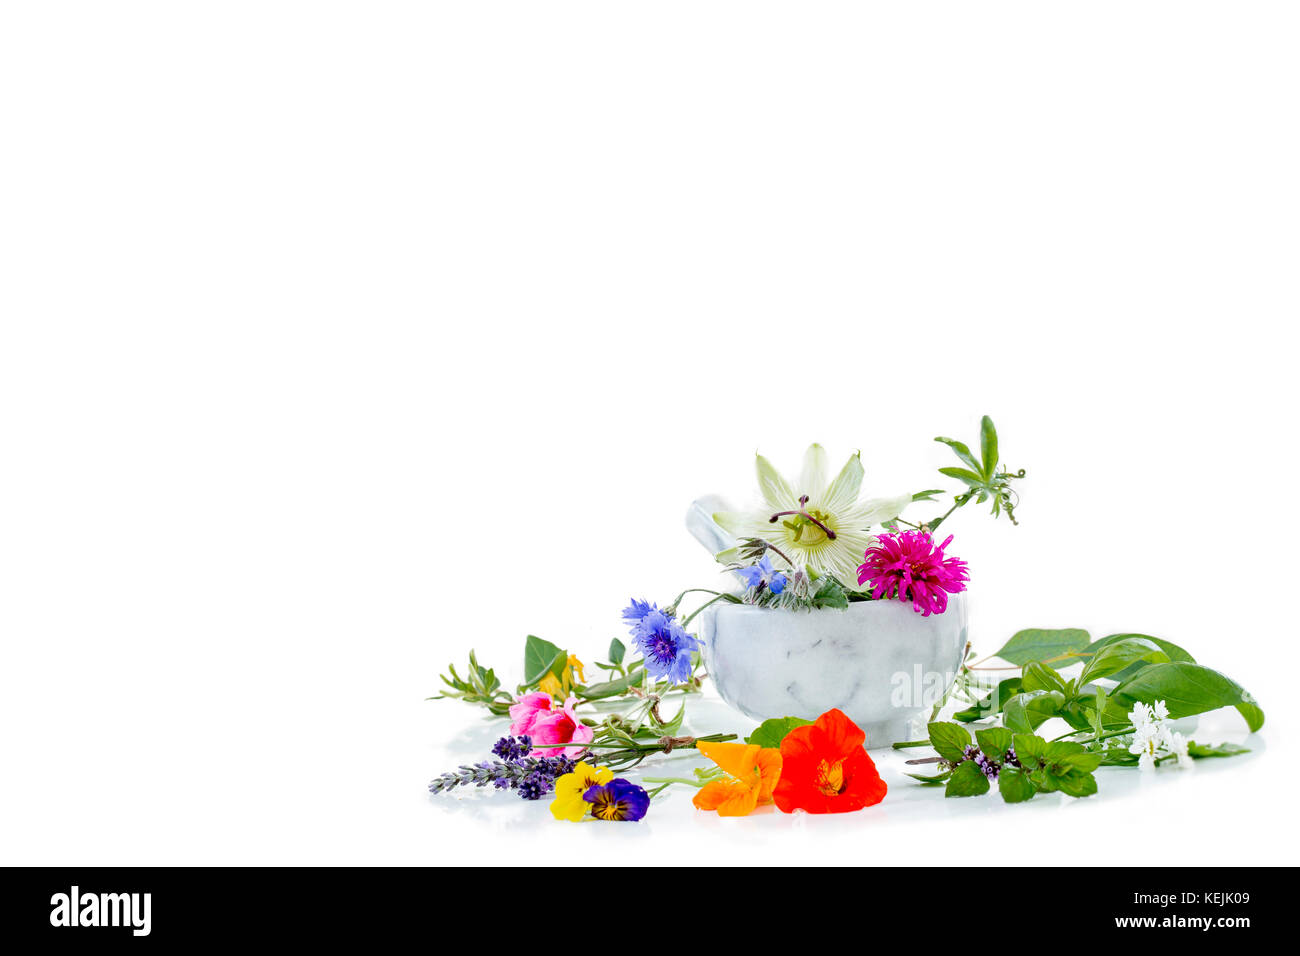 Mortero blanco con hierbas frescas y plantas medicinales y preparación de plantas medicinales para la salud belleza phytotherapyand Foto de stock